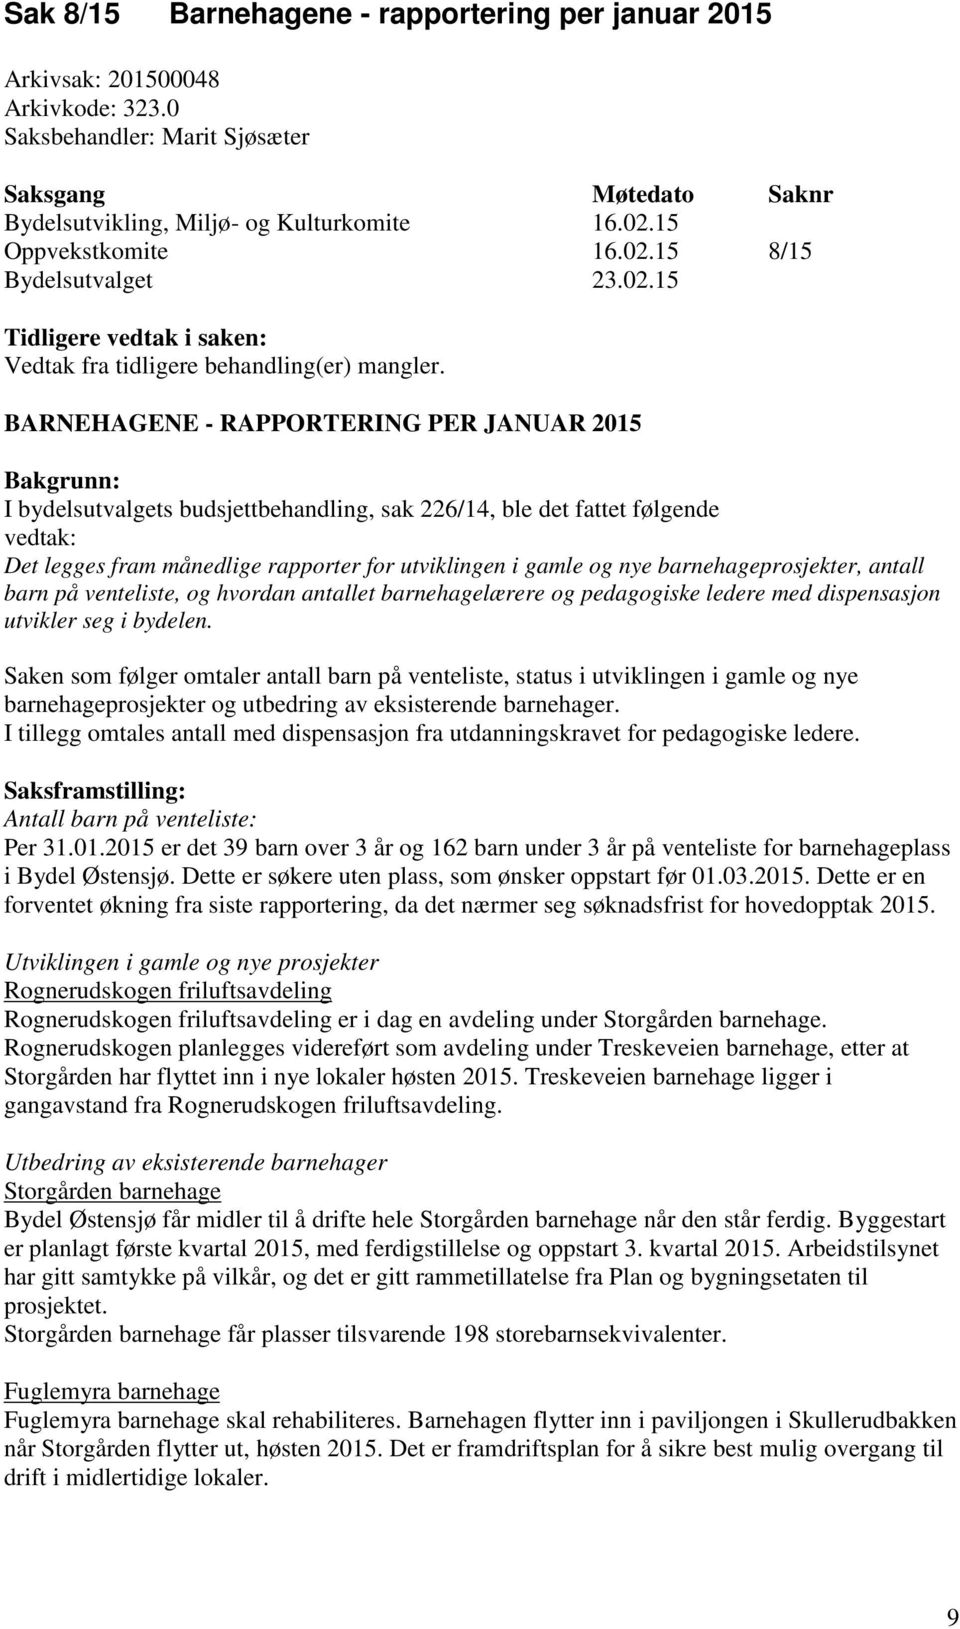 BARNEHAGENE - RAPPORTERING PER JANUAR 2015 Bakgrunn: I bydelsutvalgets budsjettbehandling, sak 226/14, ble det fattet følgende vedtak: Det legges fram månedlige rapporter for utviklingen i gamle og